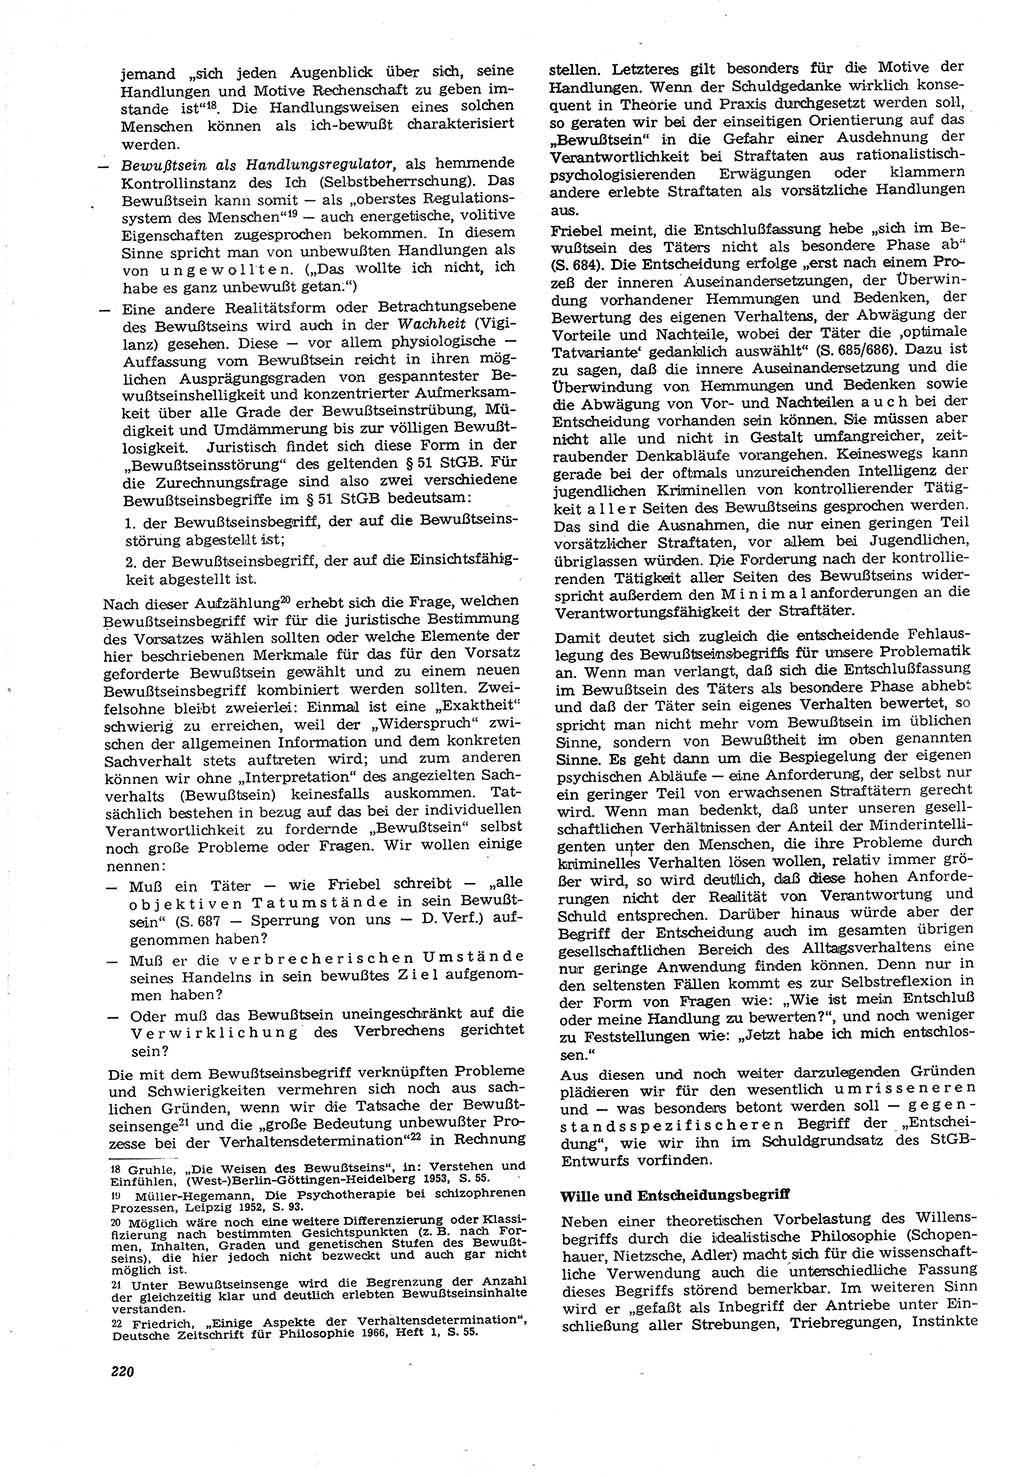 Neue Justiz (NJ), Zeitschrift für Recht und Rechtswissenschaft [Deutsche Demokratische Republik (DDR)], 21. Jahrgang 1967, Seite 220 (NJ DDR 1967, S. 220)